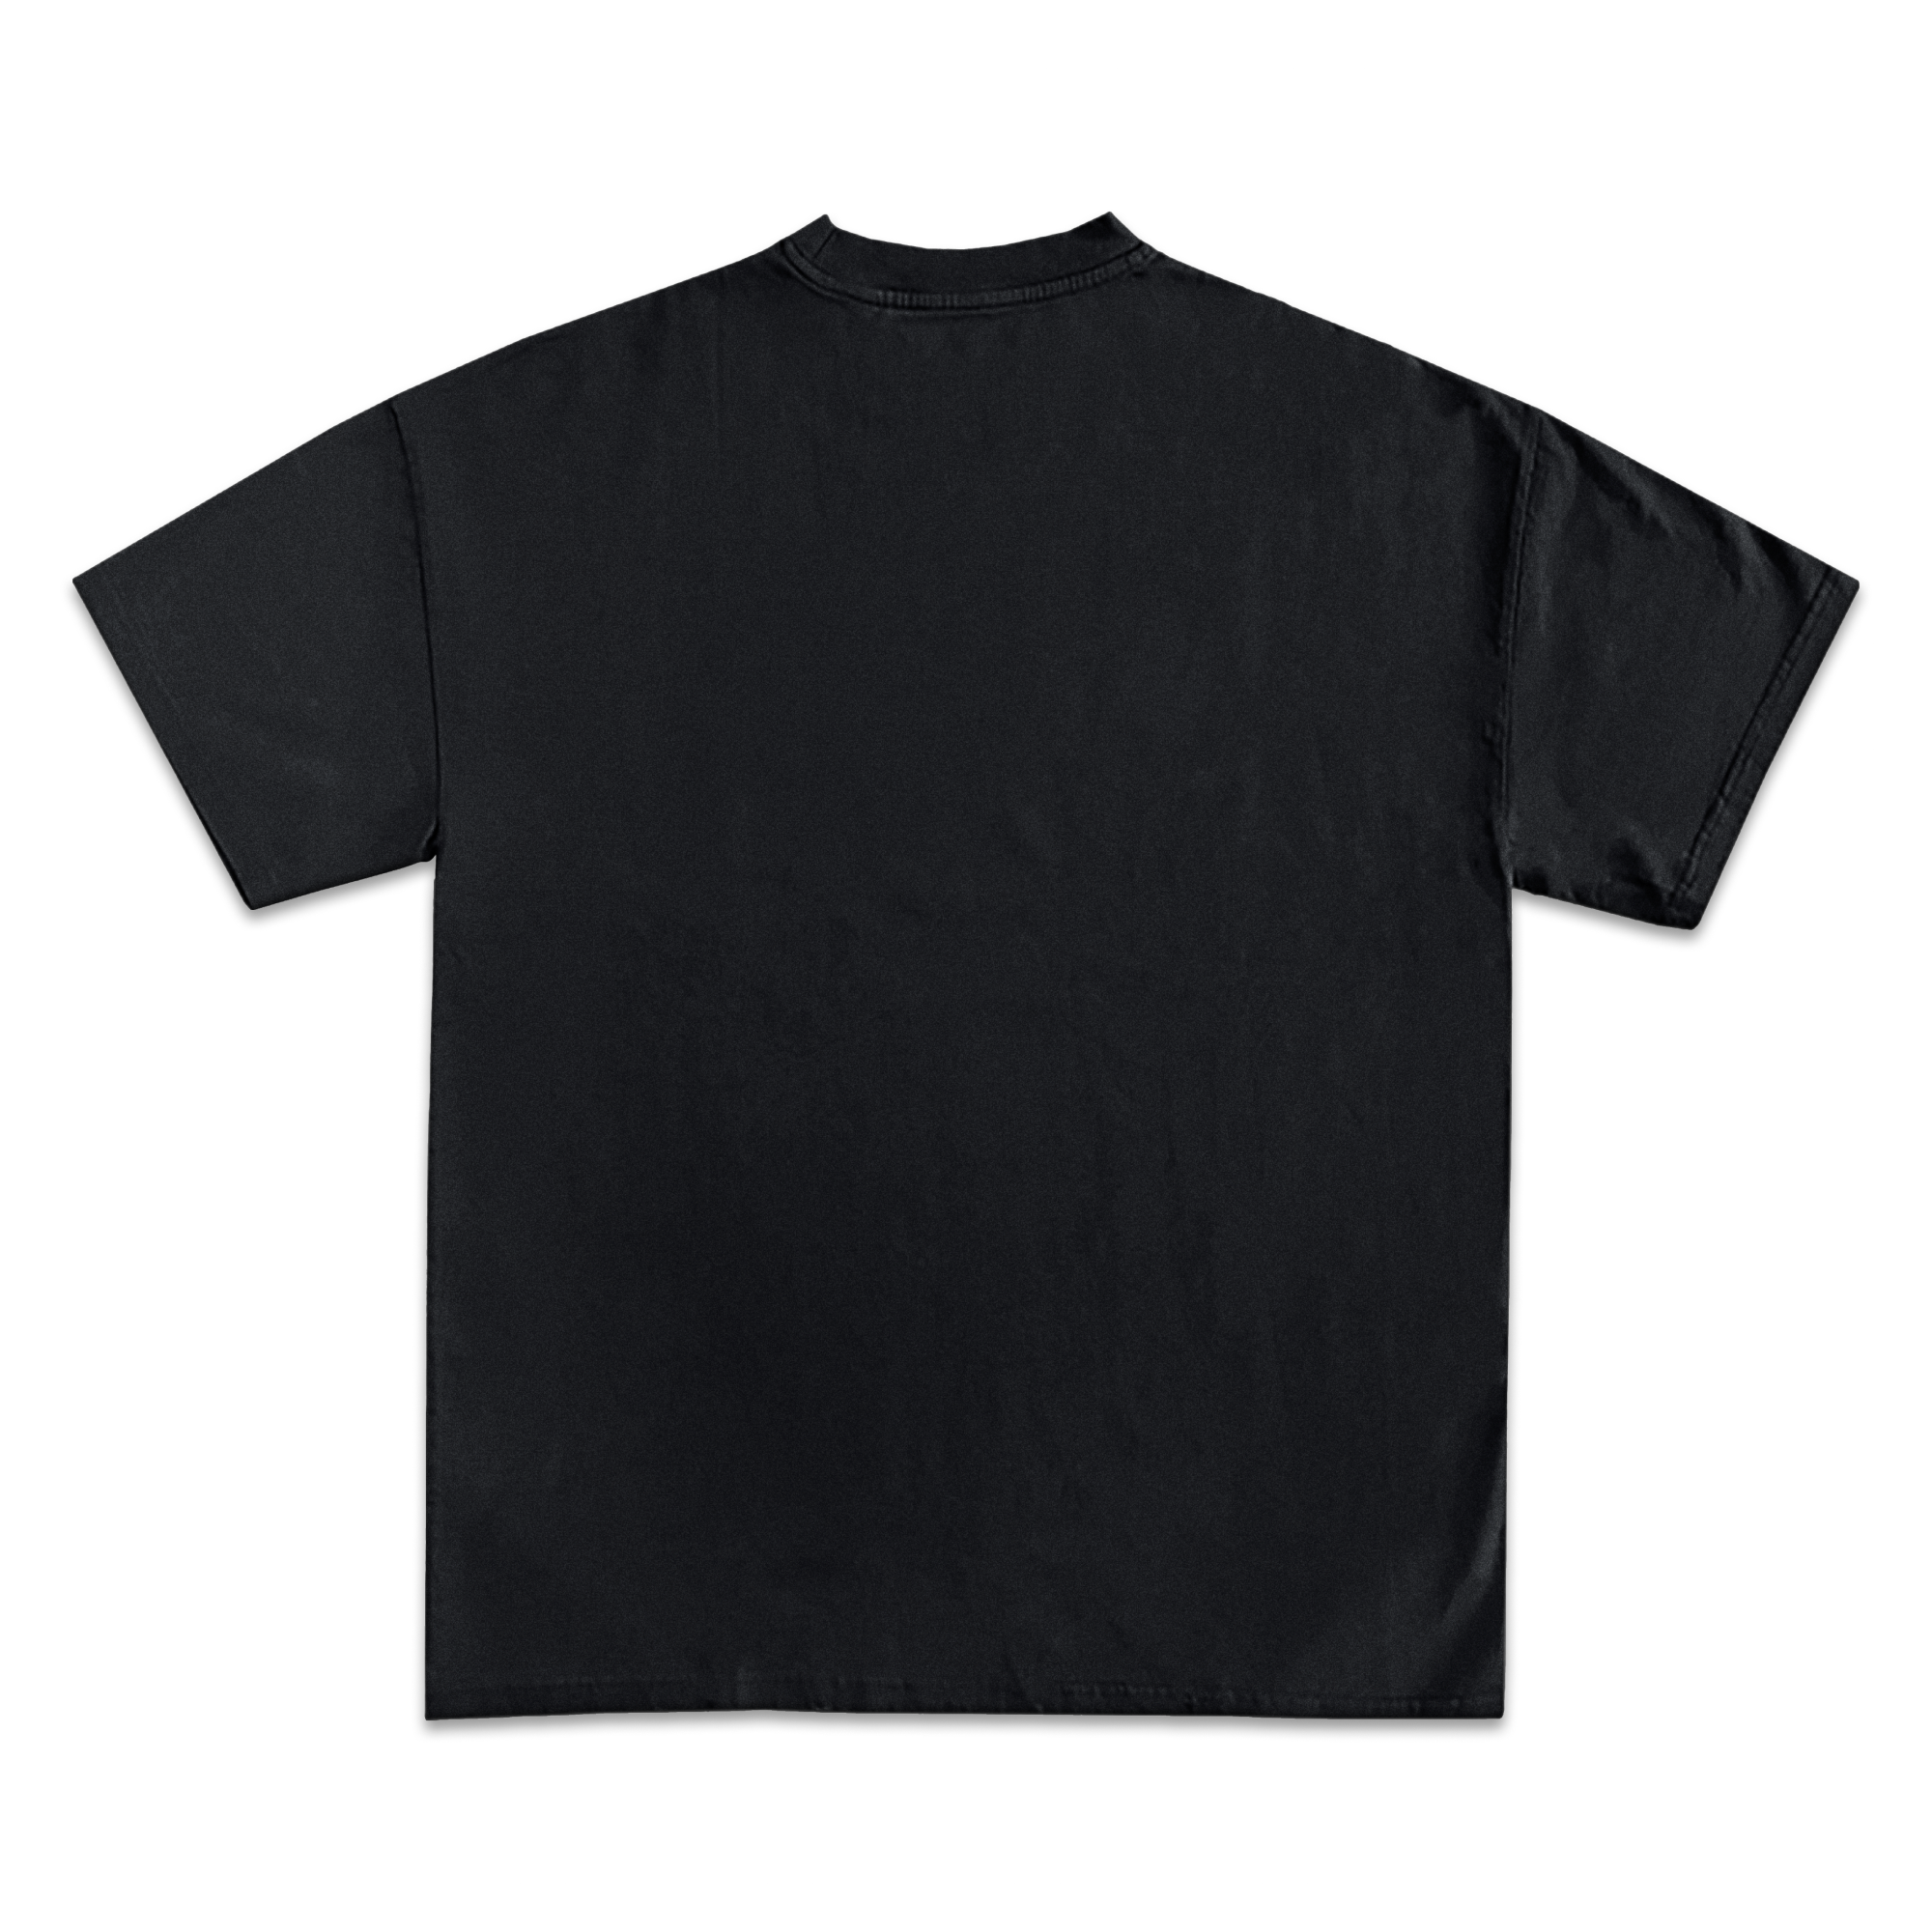 Post Malone Jumbo Graphic T-Shirt